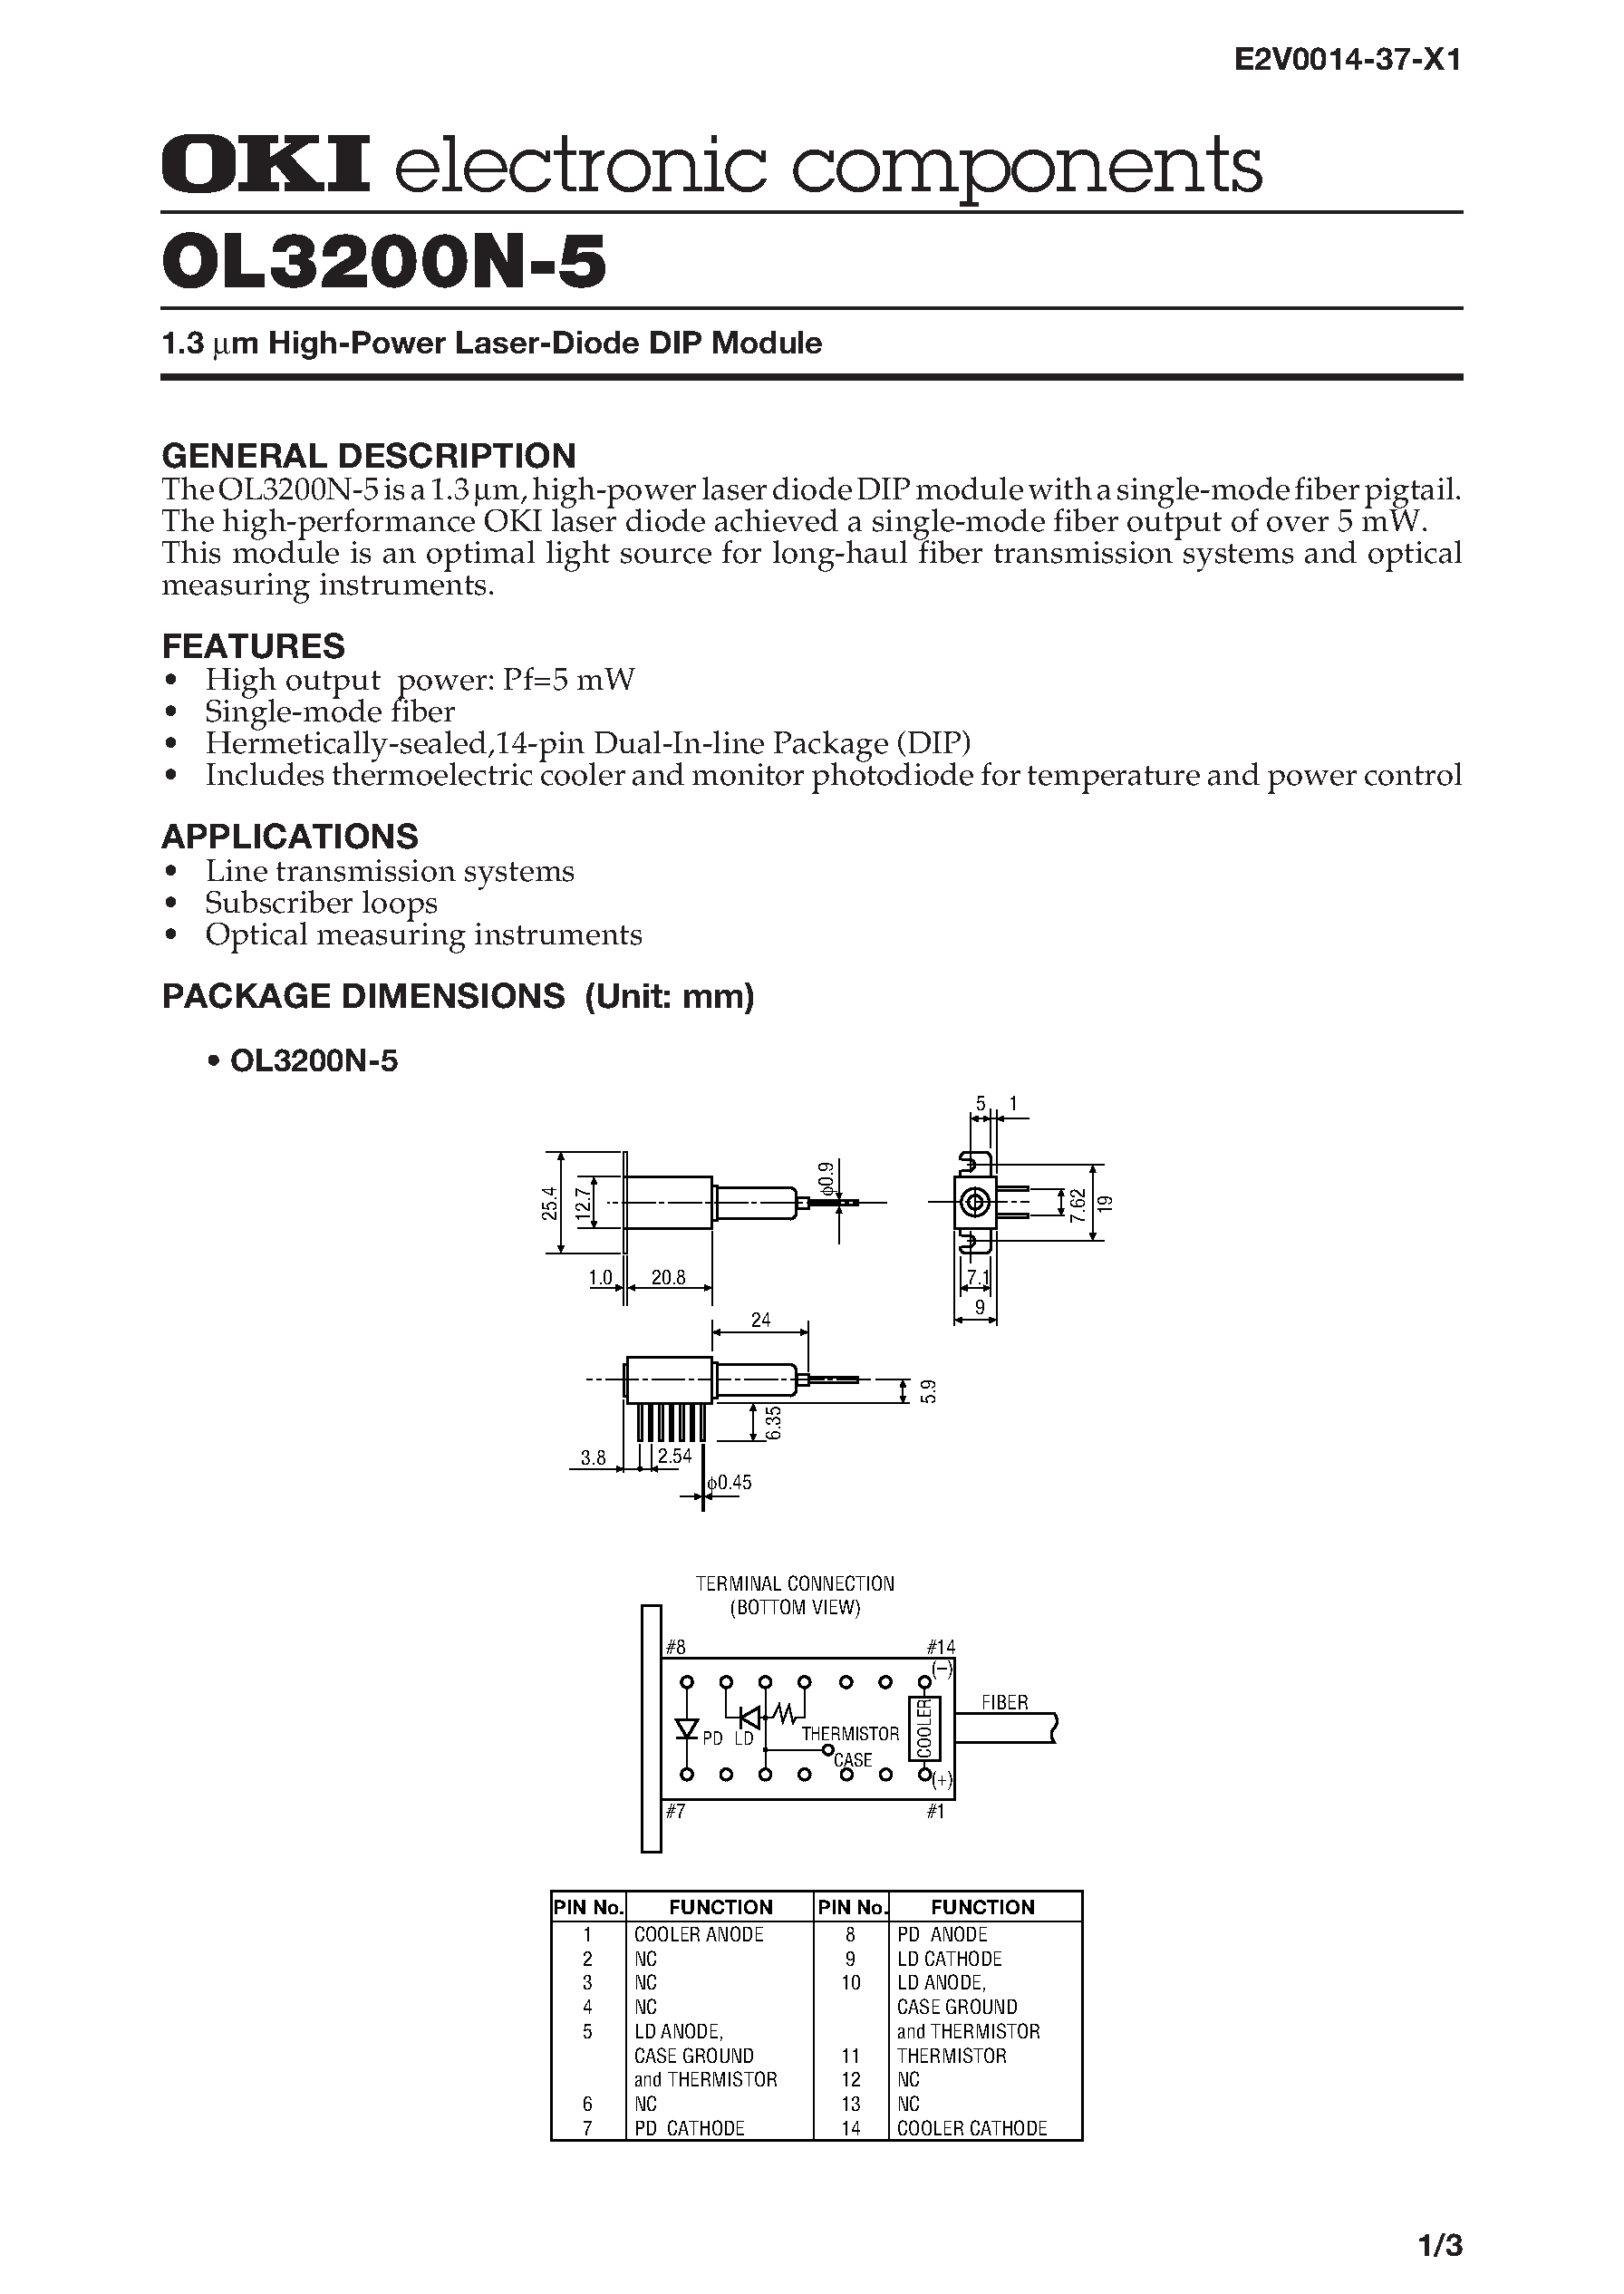 Даташит OL3200N-5 - 1.3 m High-Power Laser-Diode DIP Module страница 1